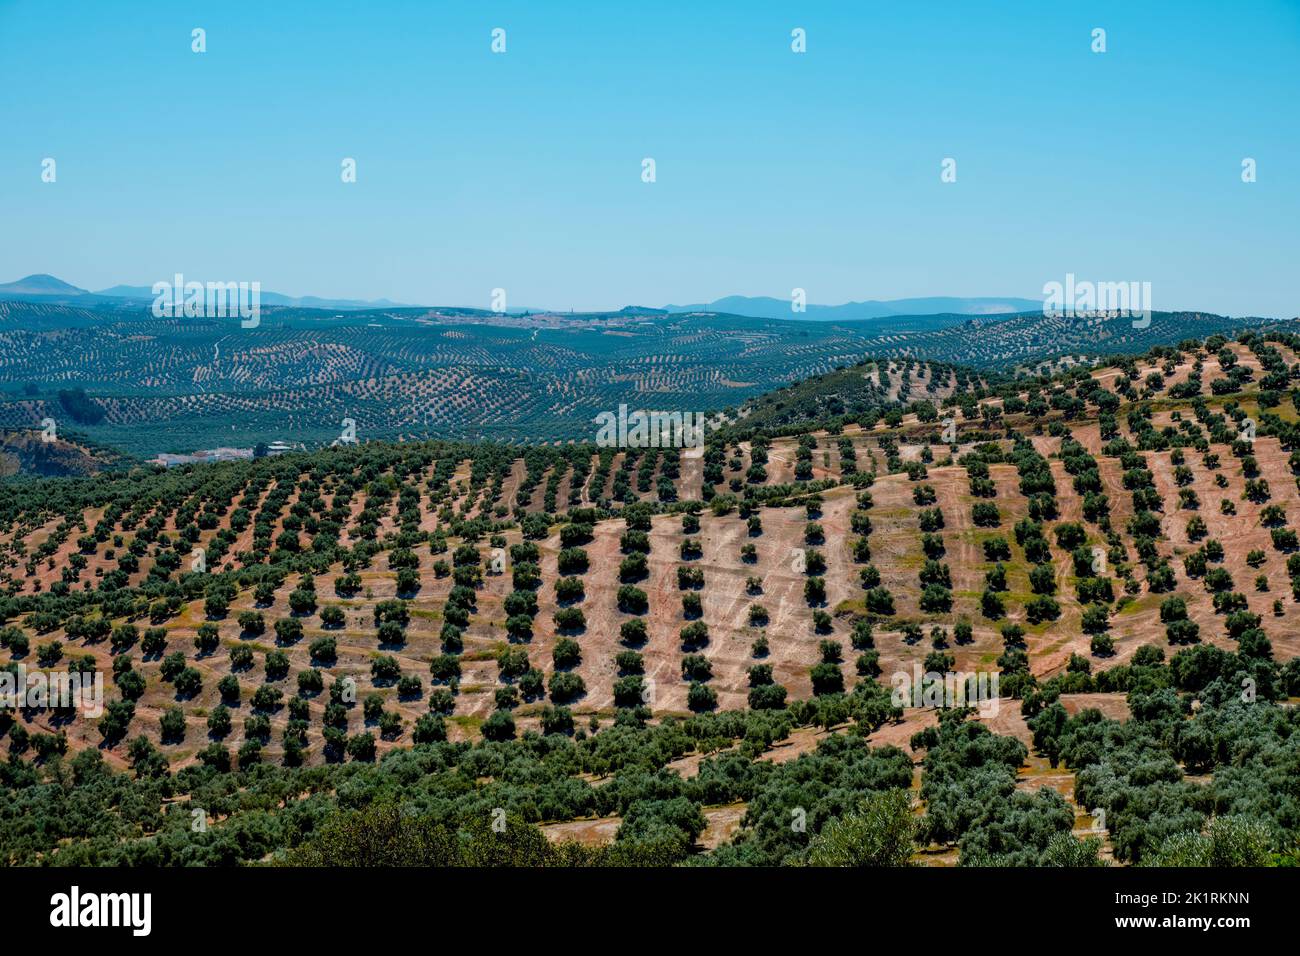 Vista de un olivar en Rute, Andalucía, España, y Encinas Reales y Benameji al fondo, destacando el campanario de la Inmaculada C. Foto de stock